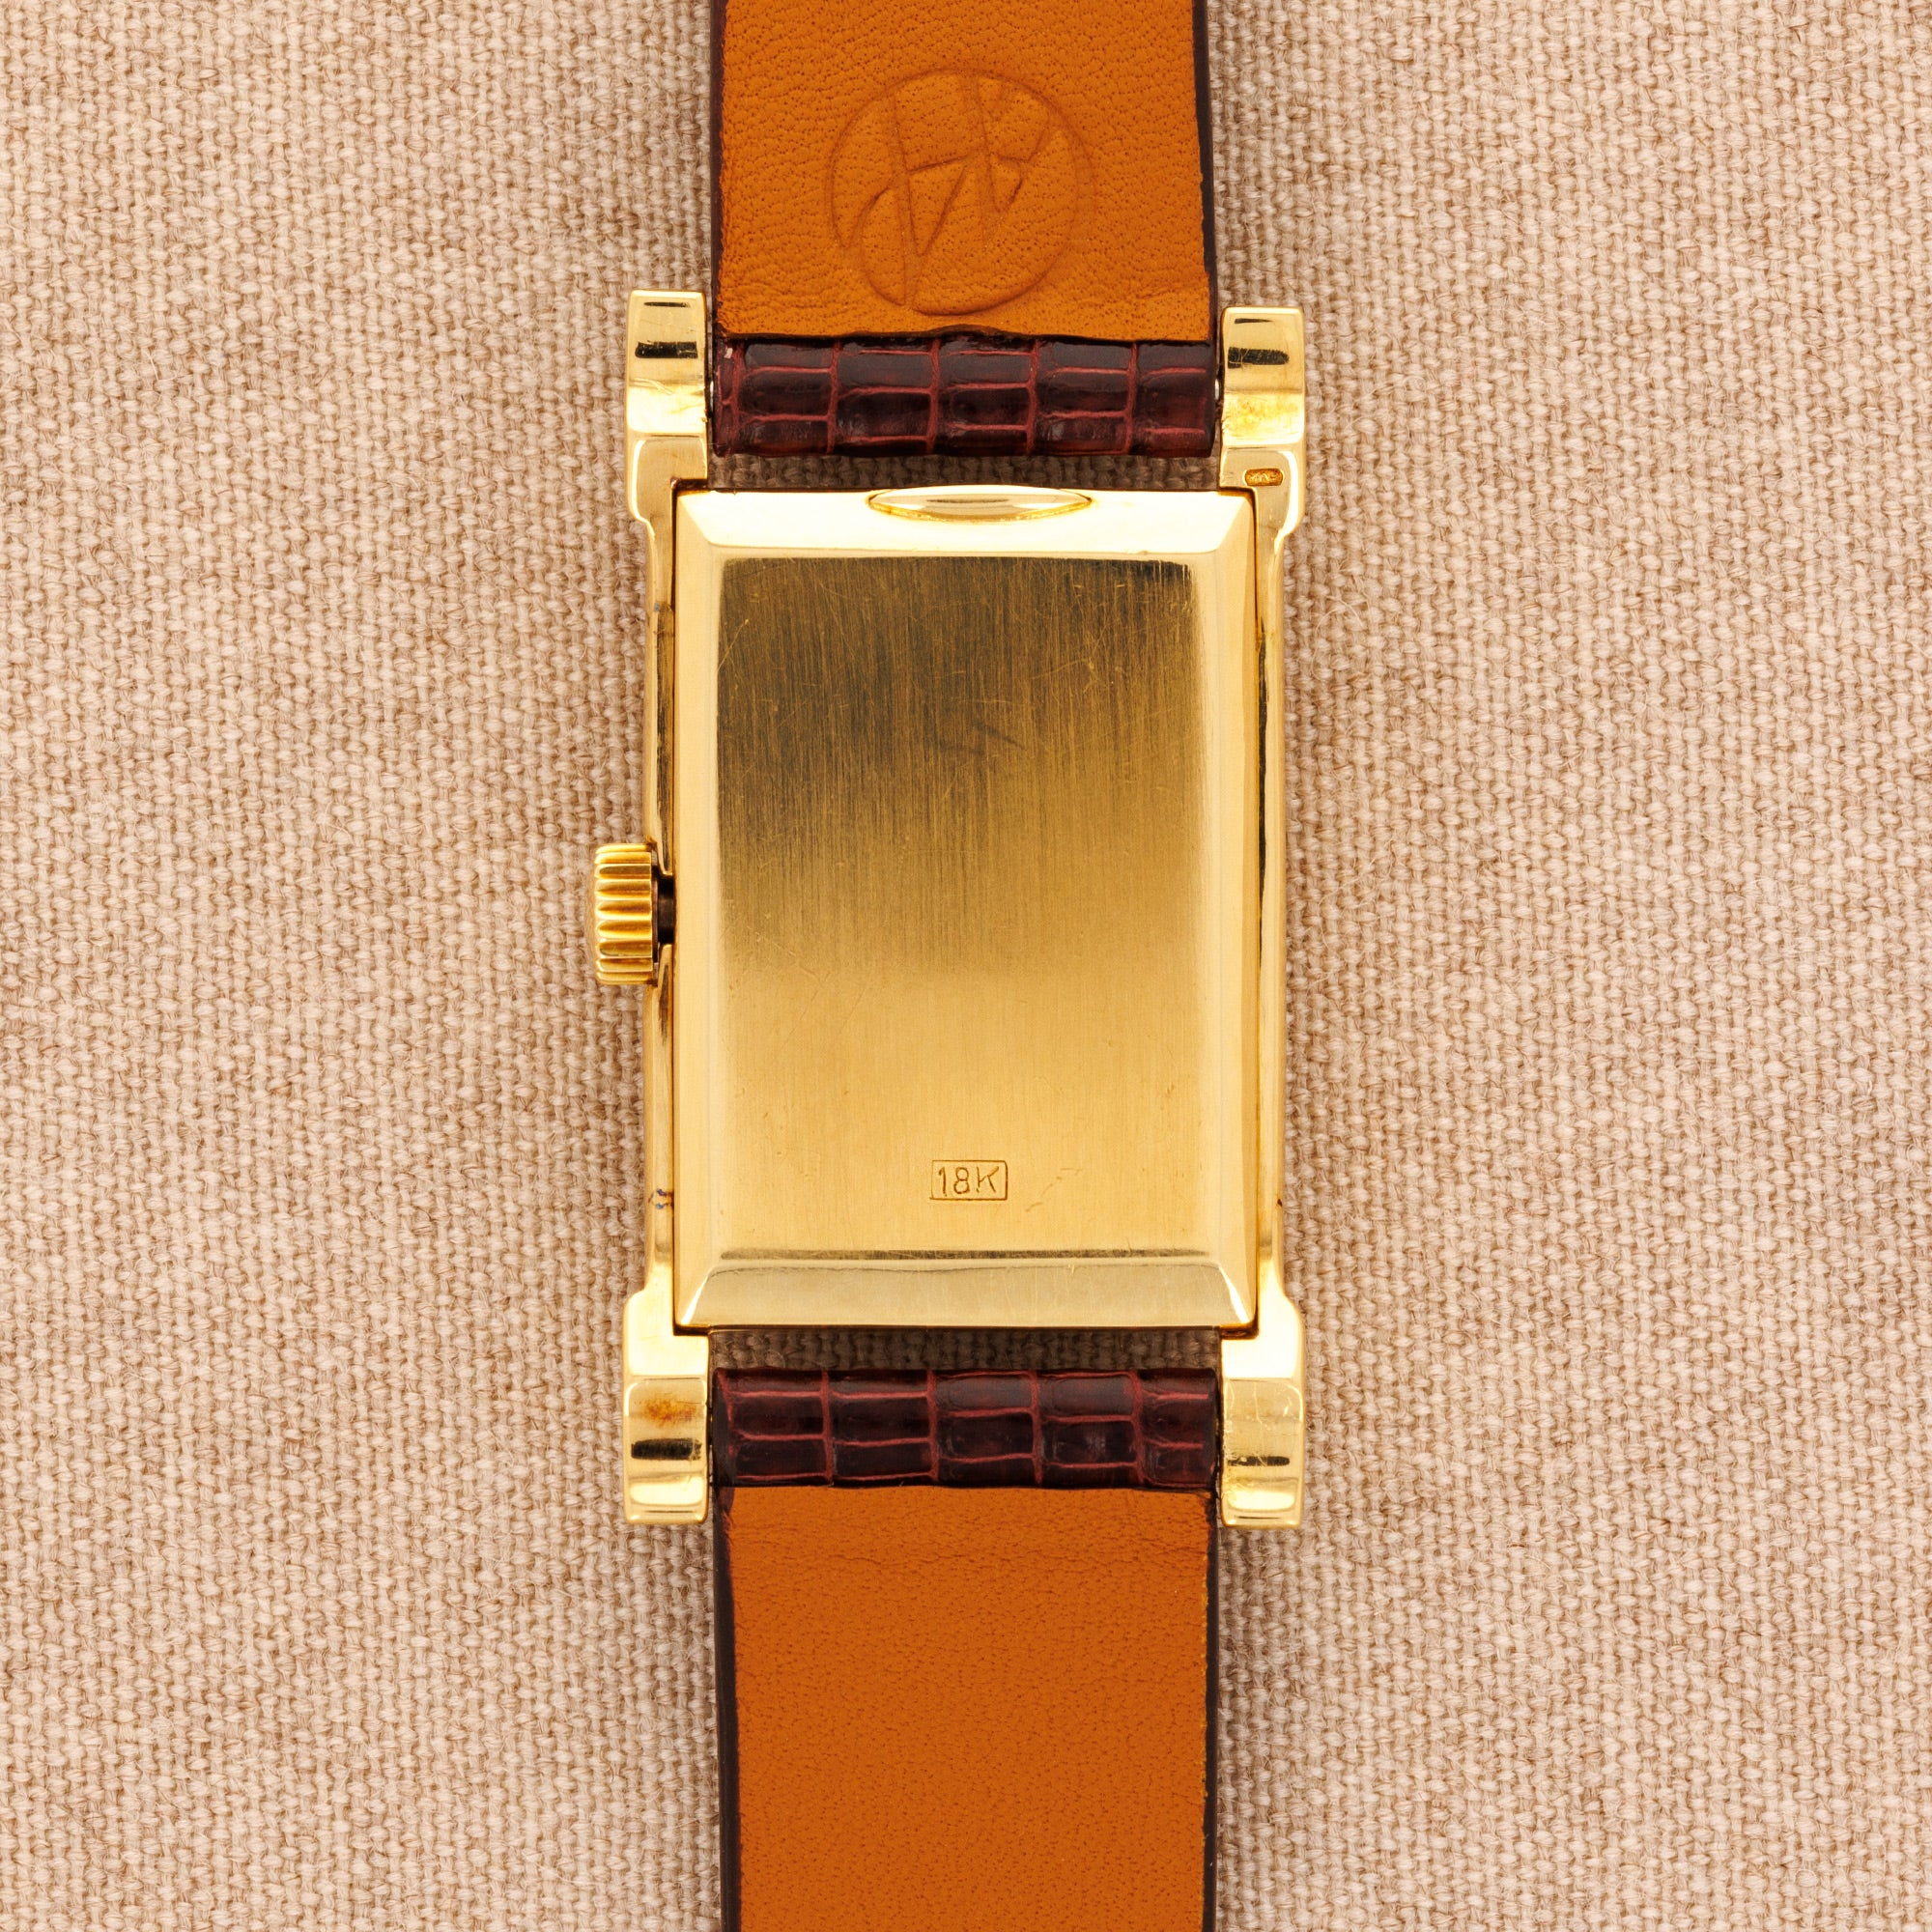 Patek Philippe - Patek Philippe Yellow Gold Rectangular Watch Ref. 2415 - The Keystone Watches